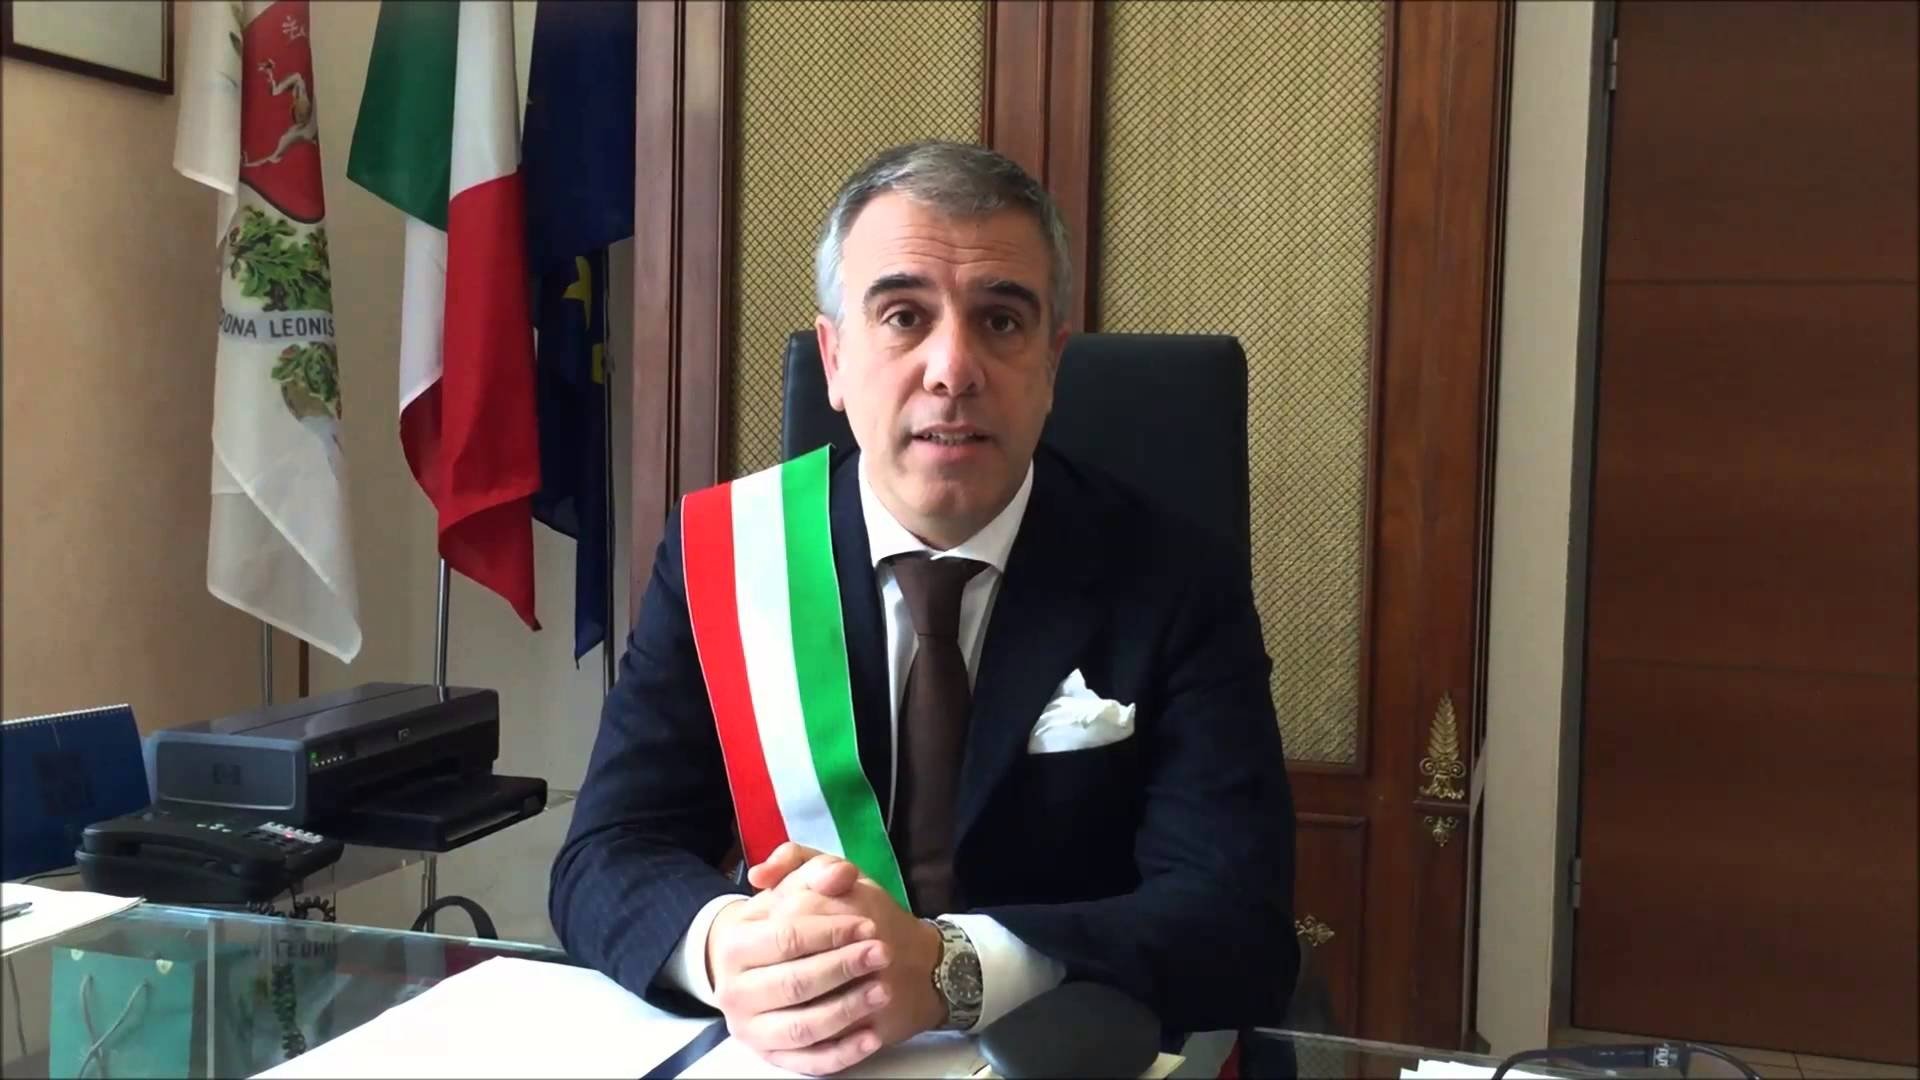 Dieci profughi assegnati a Tortona. Il sindaco Bardone chiede un incontro al Prefetto: “Ci coinvolga nelle scelte”